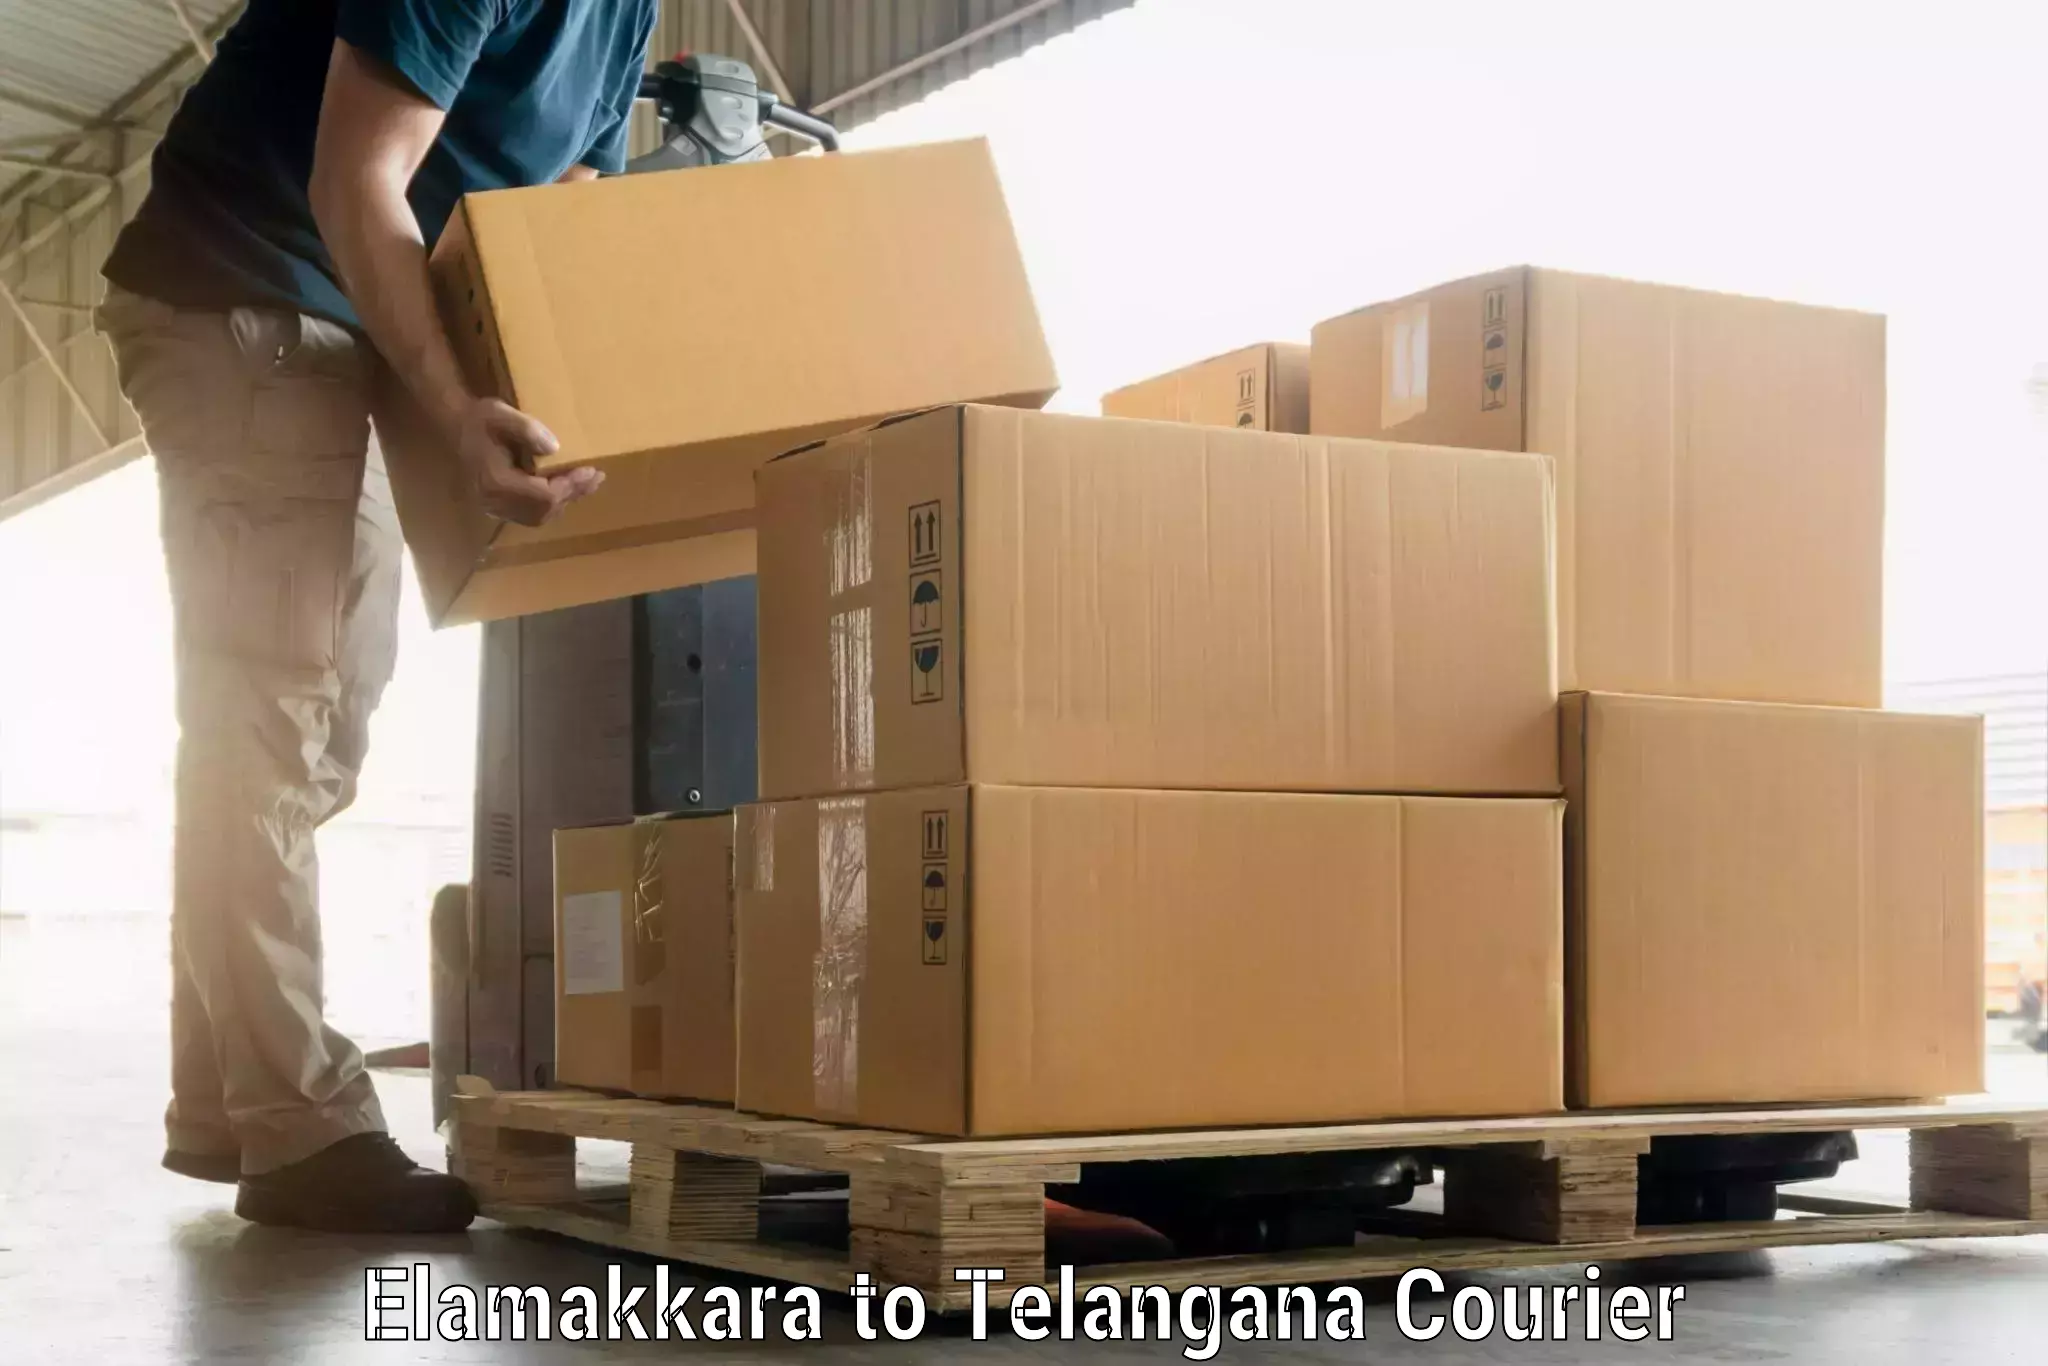 Luggage delivery optimization Elamakkara to Jangaon